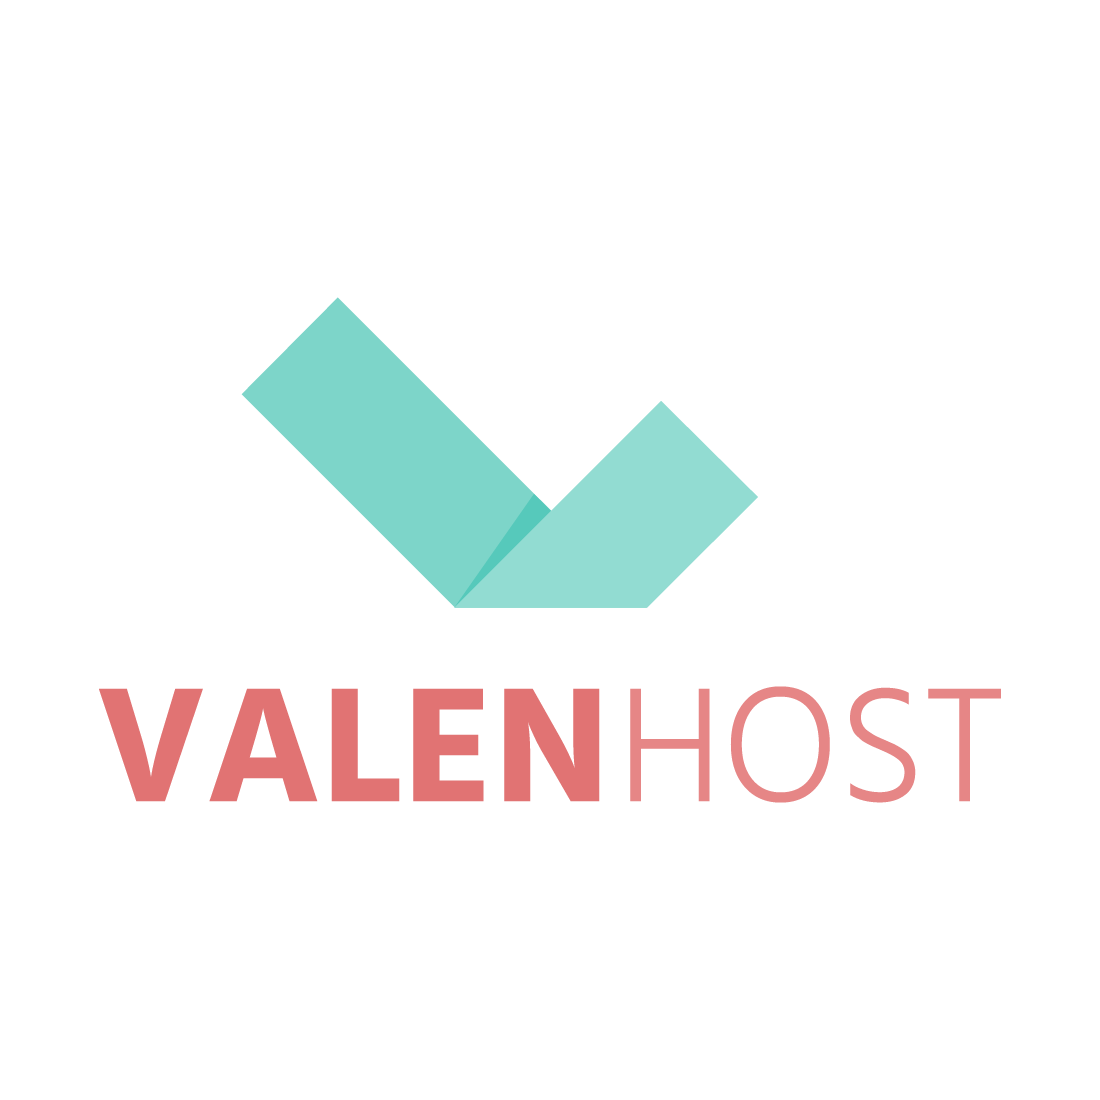 (c) Valen.host